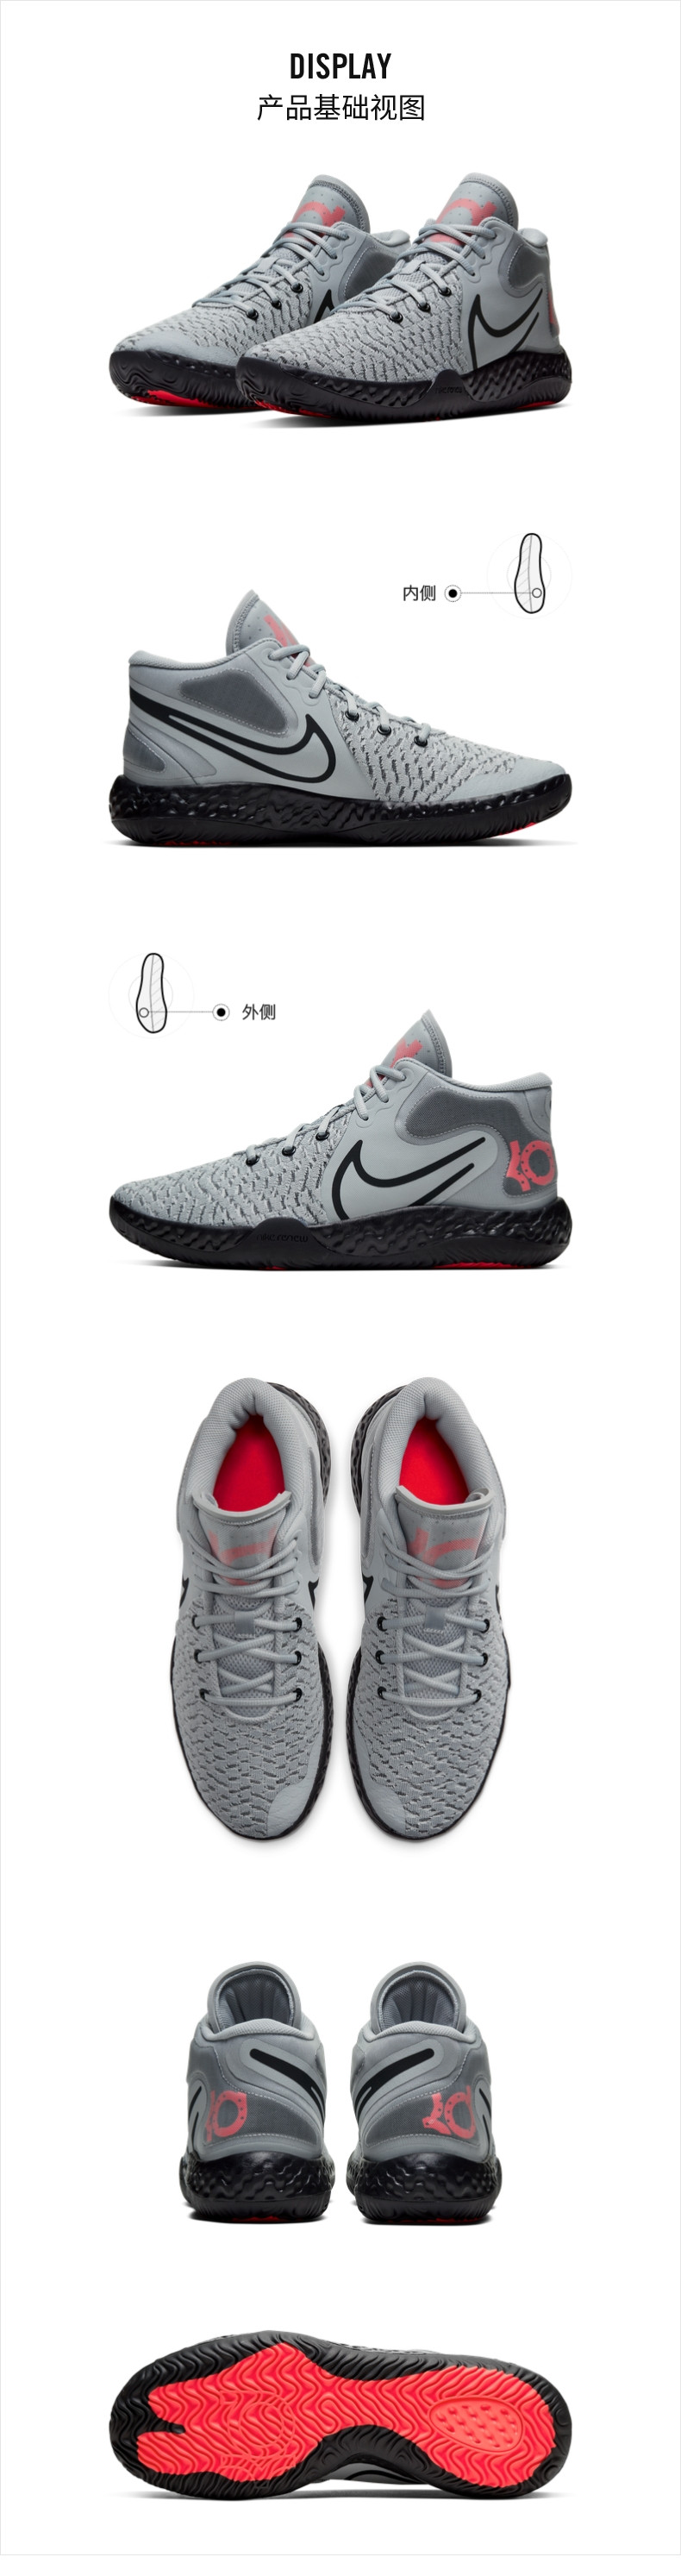 耐克/NIKE Nike耐克官方KD TREY 5 VIII EP凯文杜兰特男/女篮球鞋新品CK2089